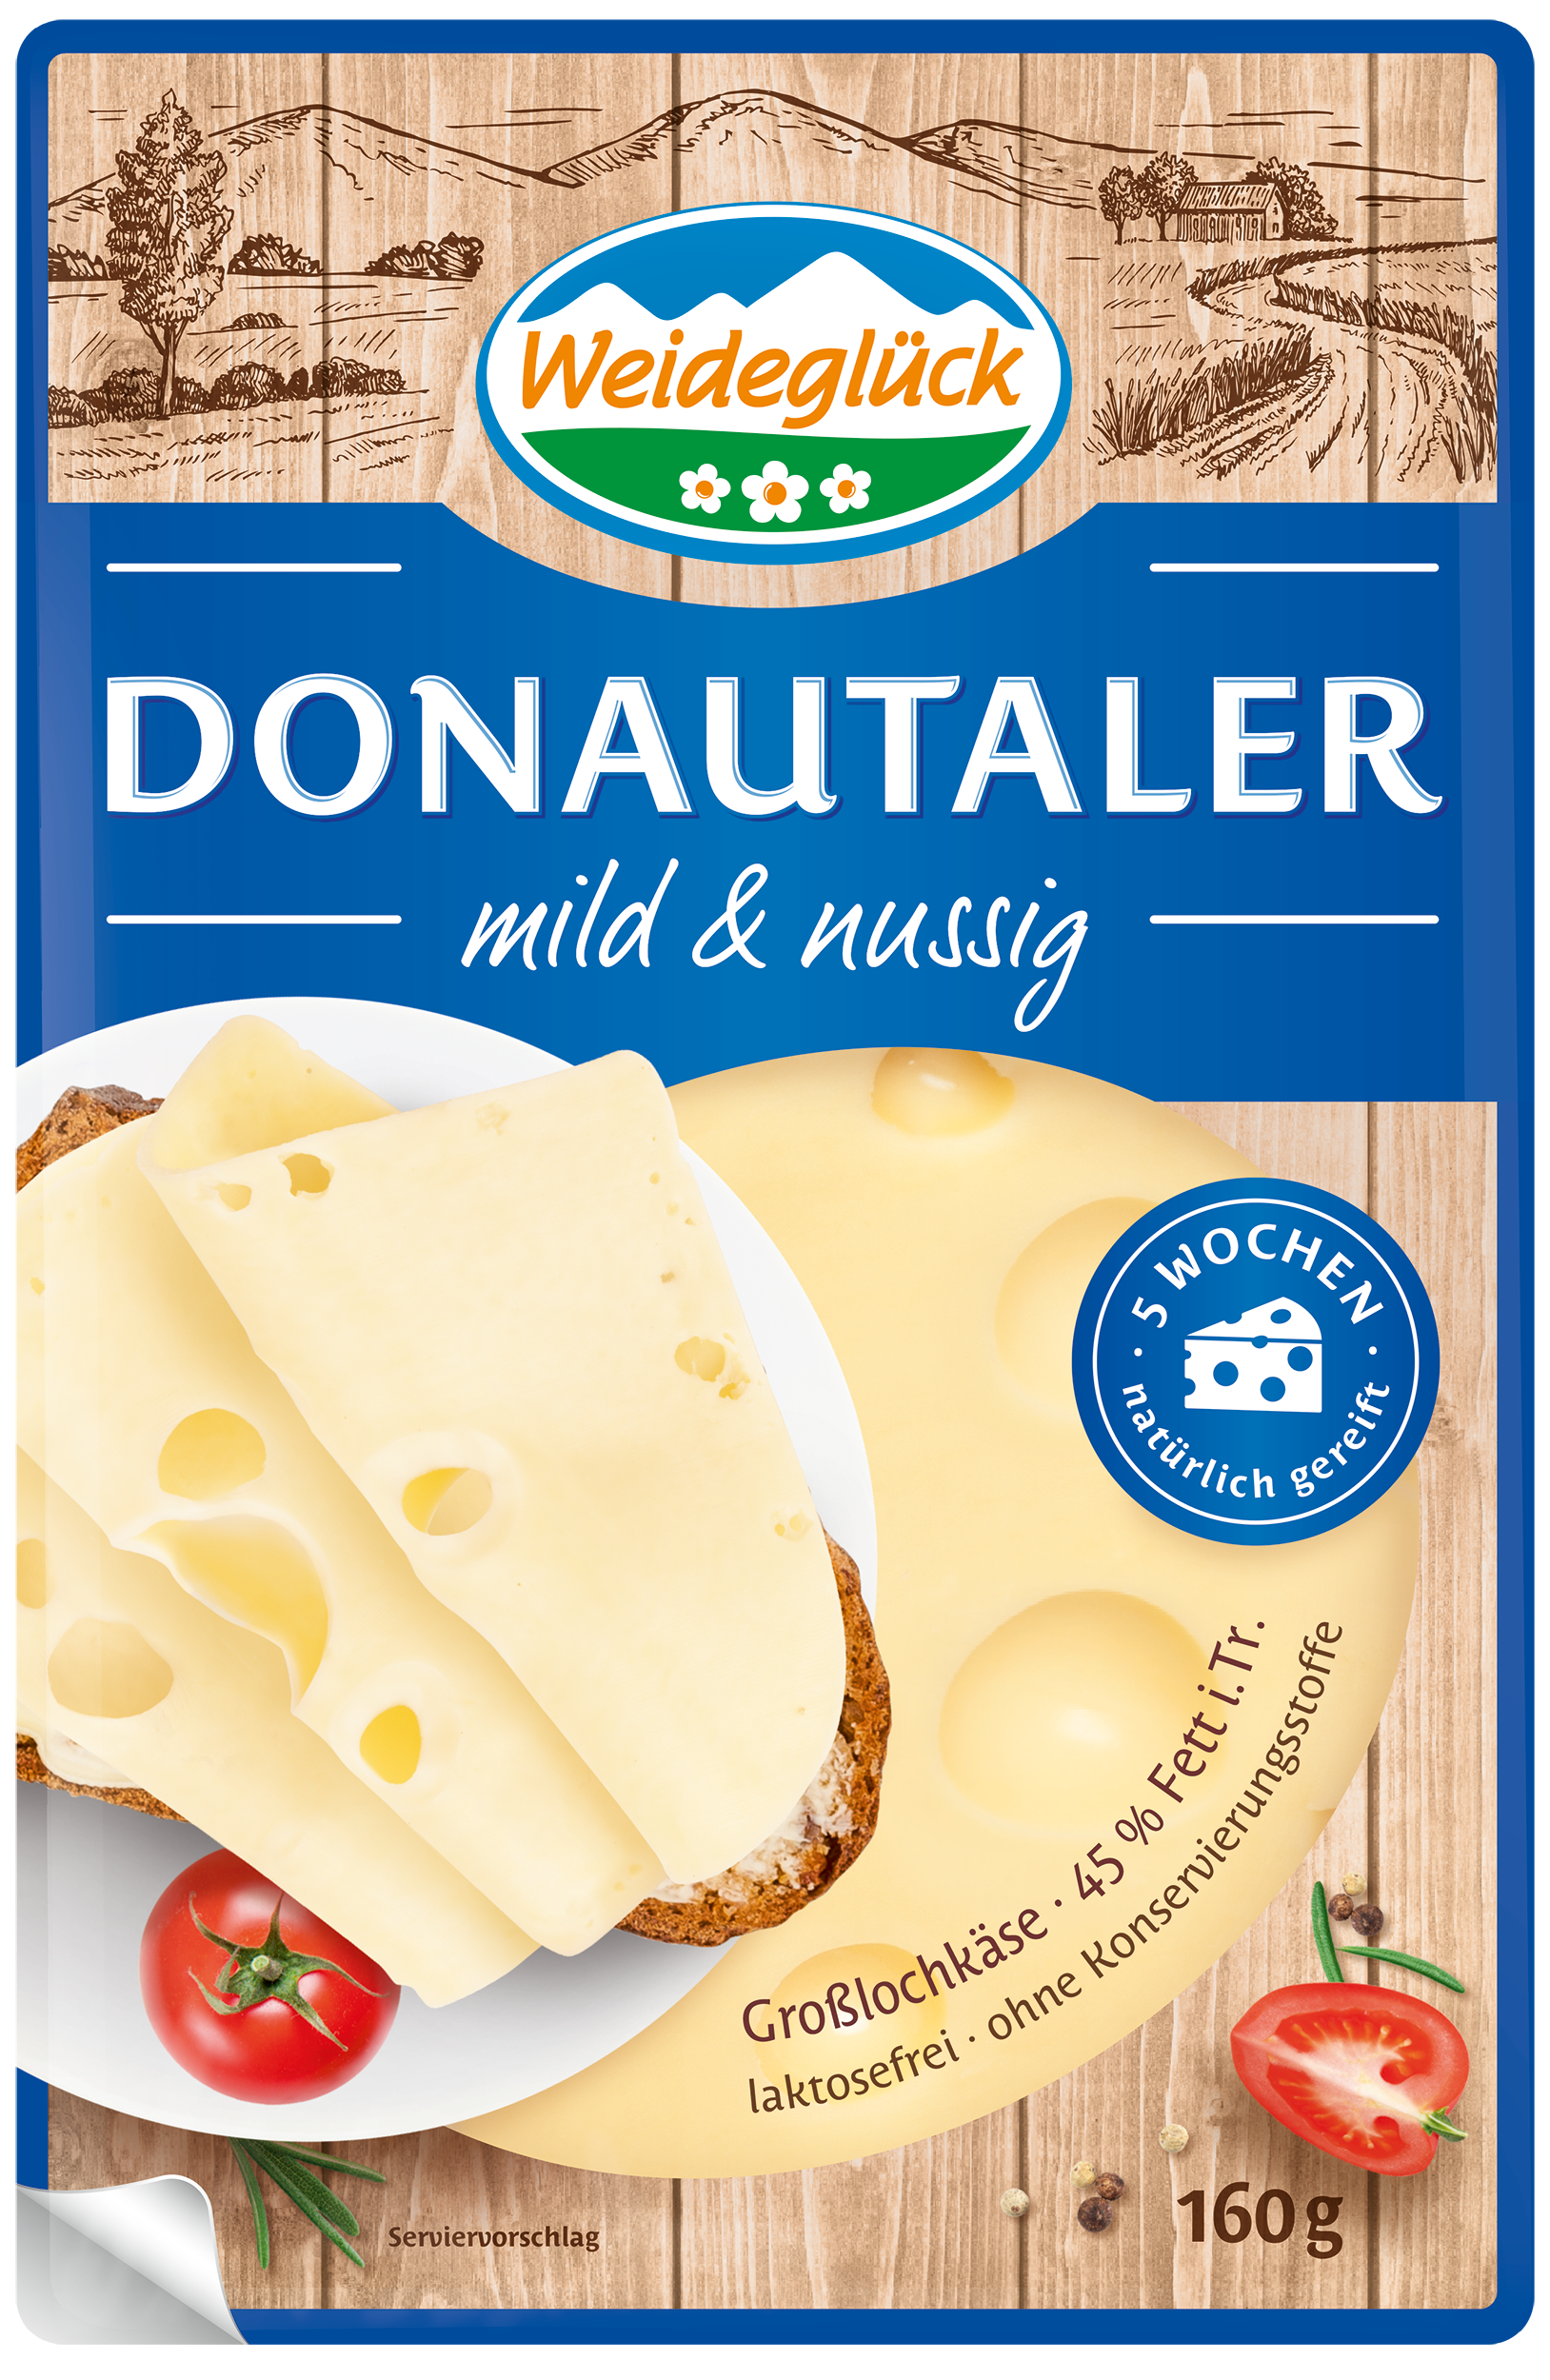 Packshot Weideglück Käse im Kühlregal Donautaler Großlochkäse Scheiben mild und nussig 160 Gramm